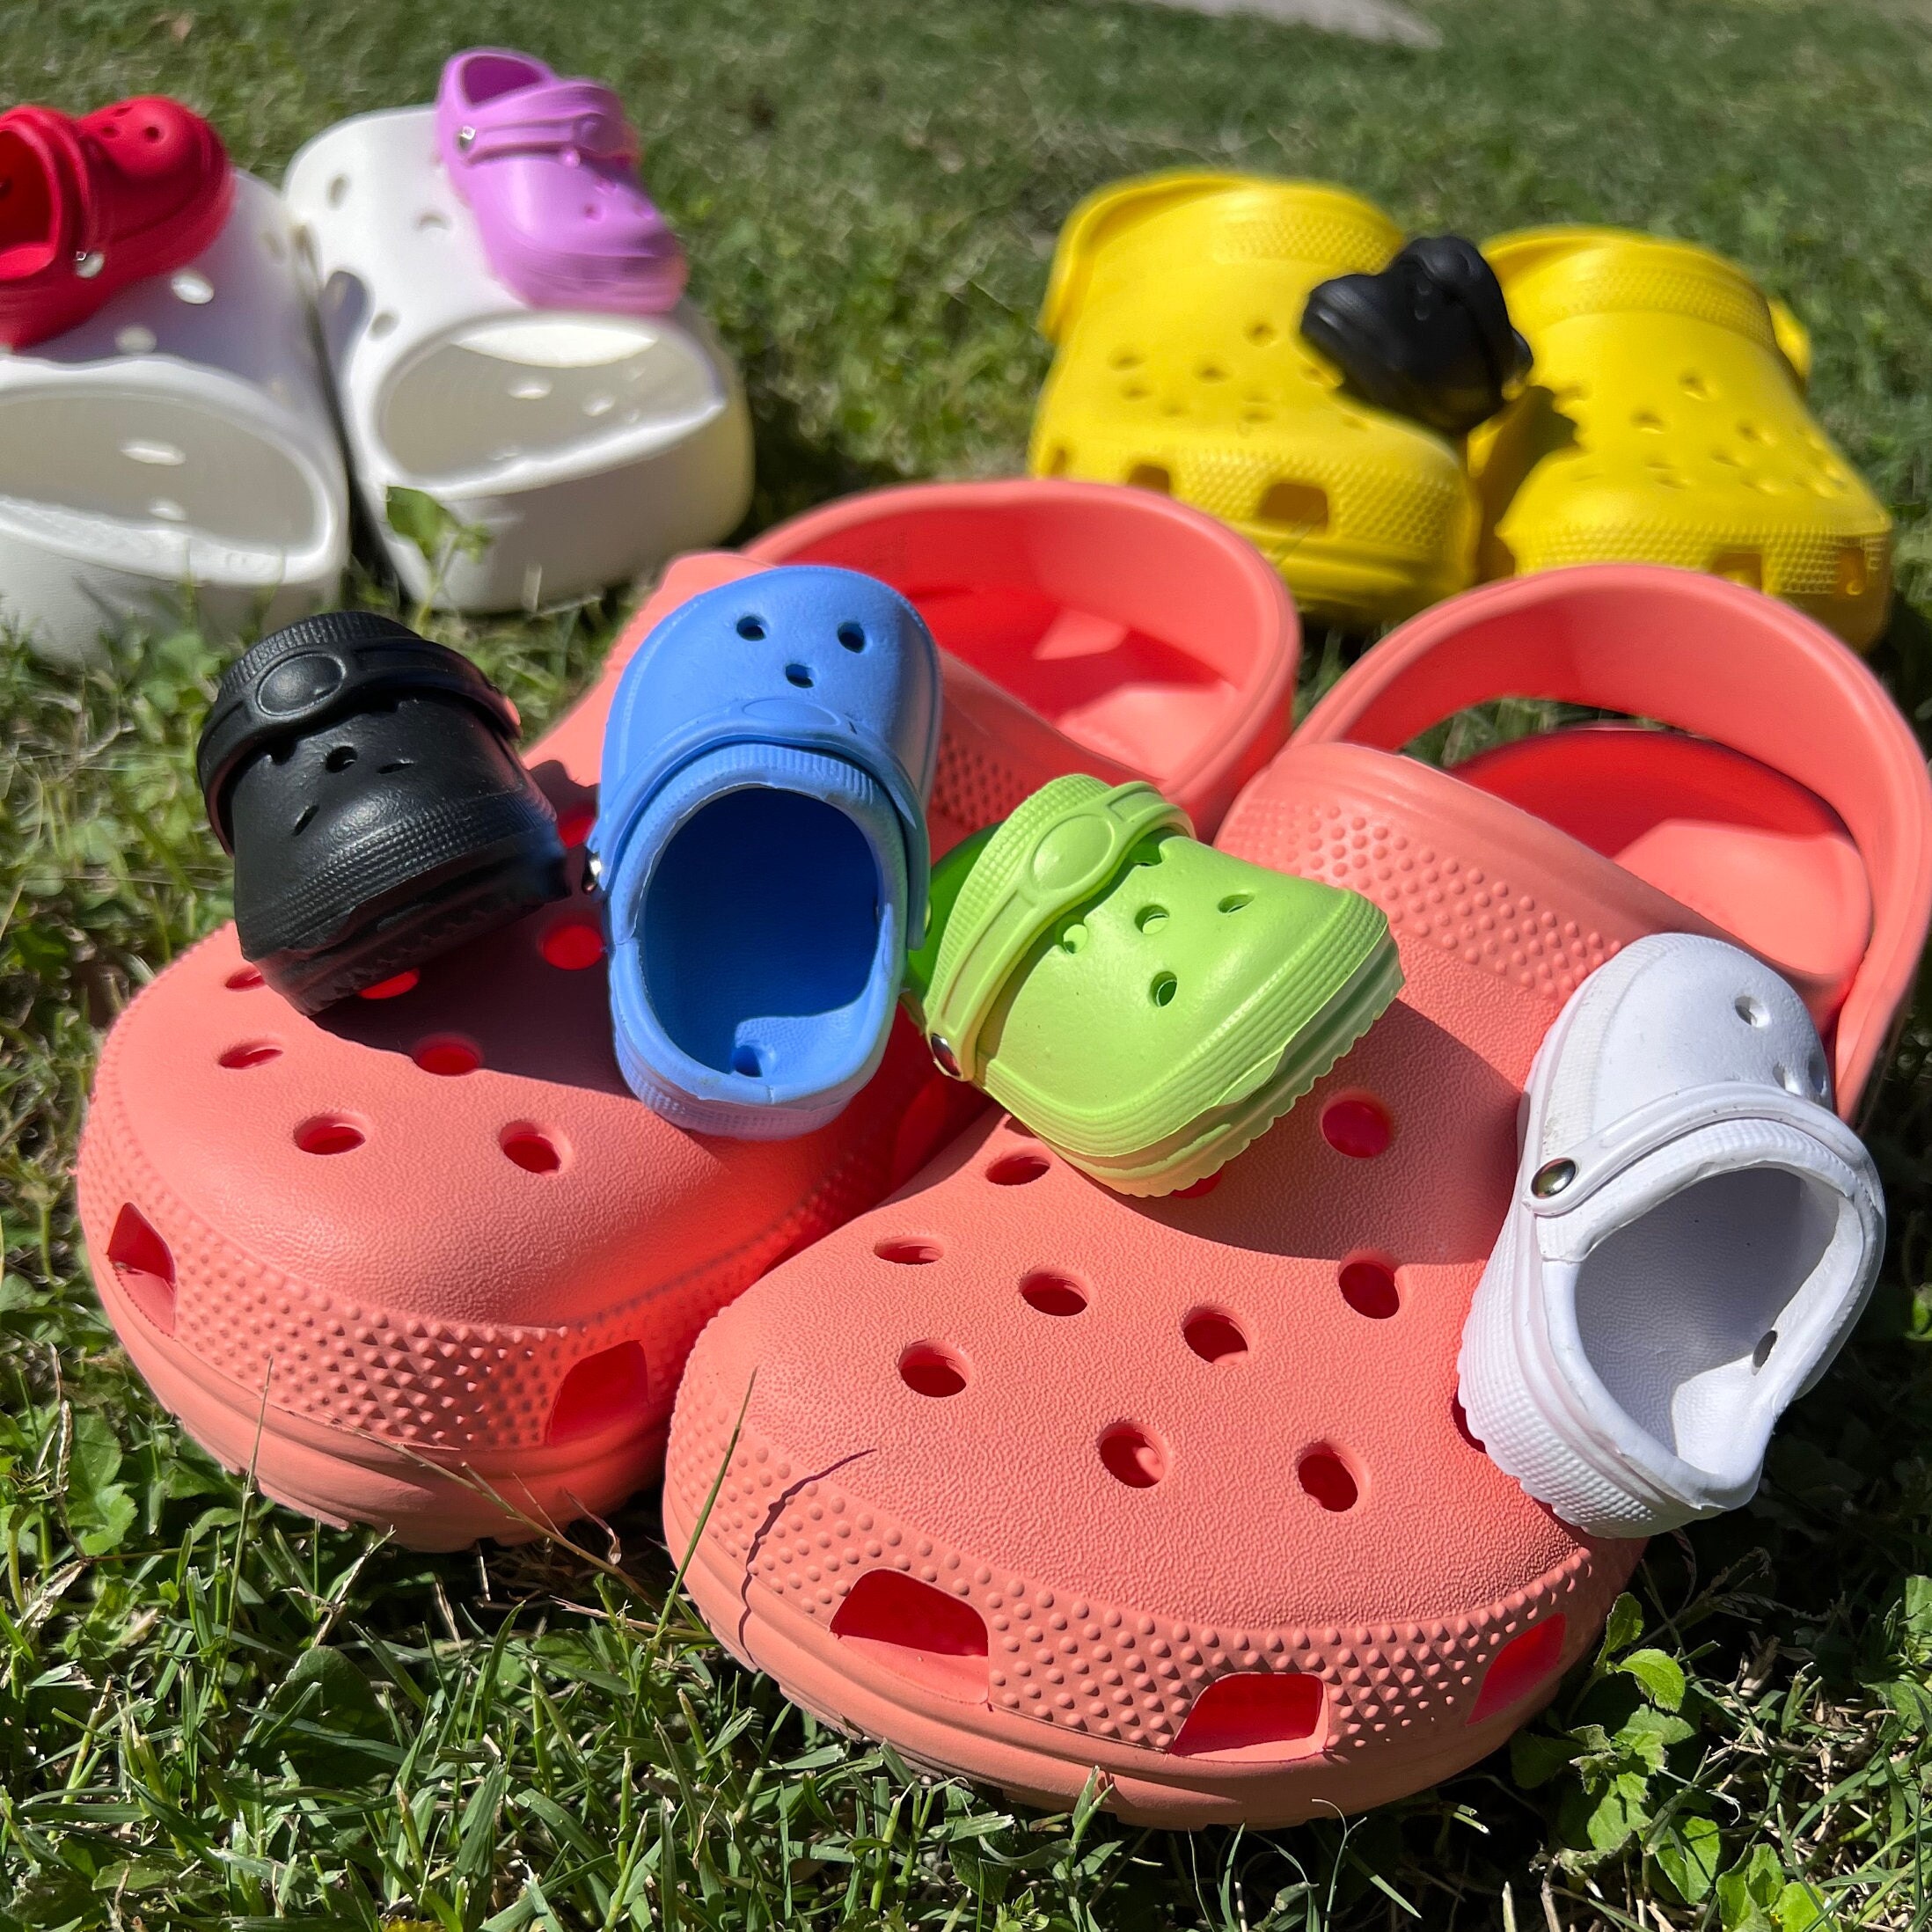 Set of 2 Mini Crocs Croc Charms Shoe Charms Croc Accessories